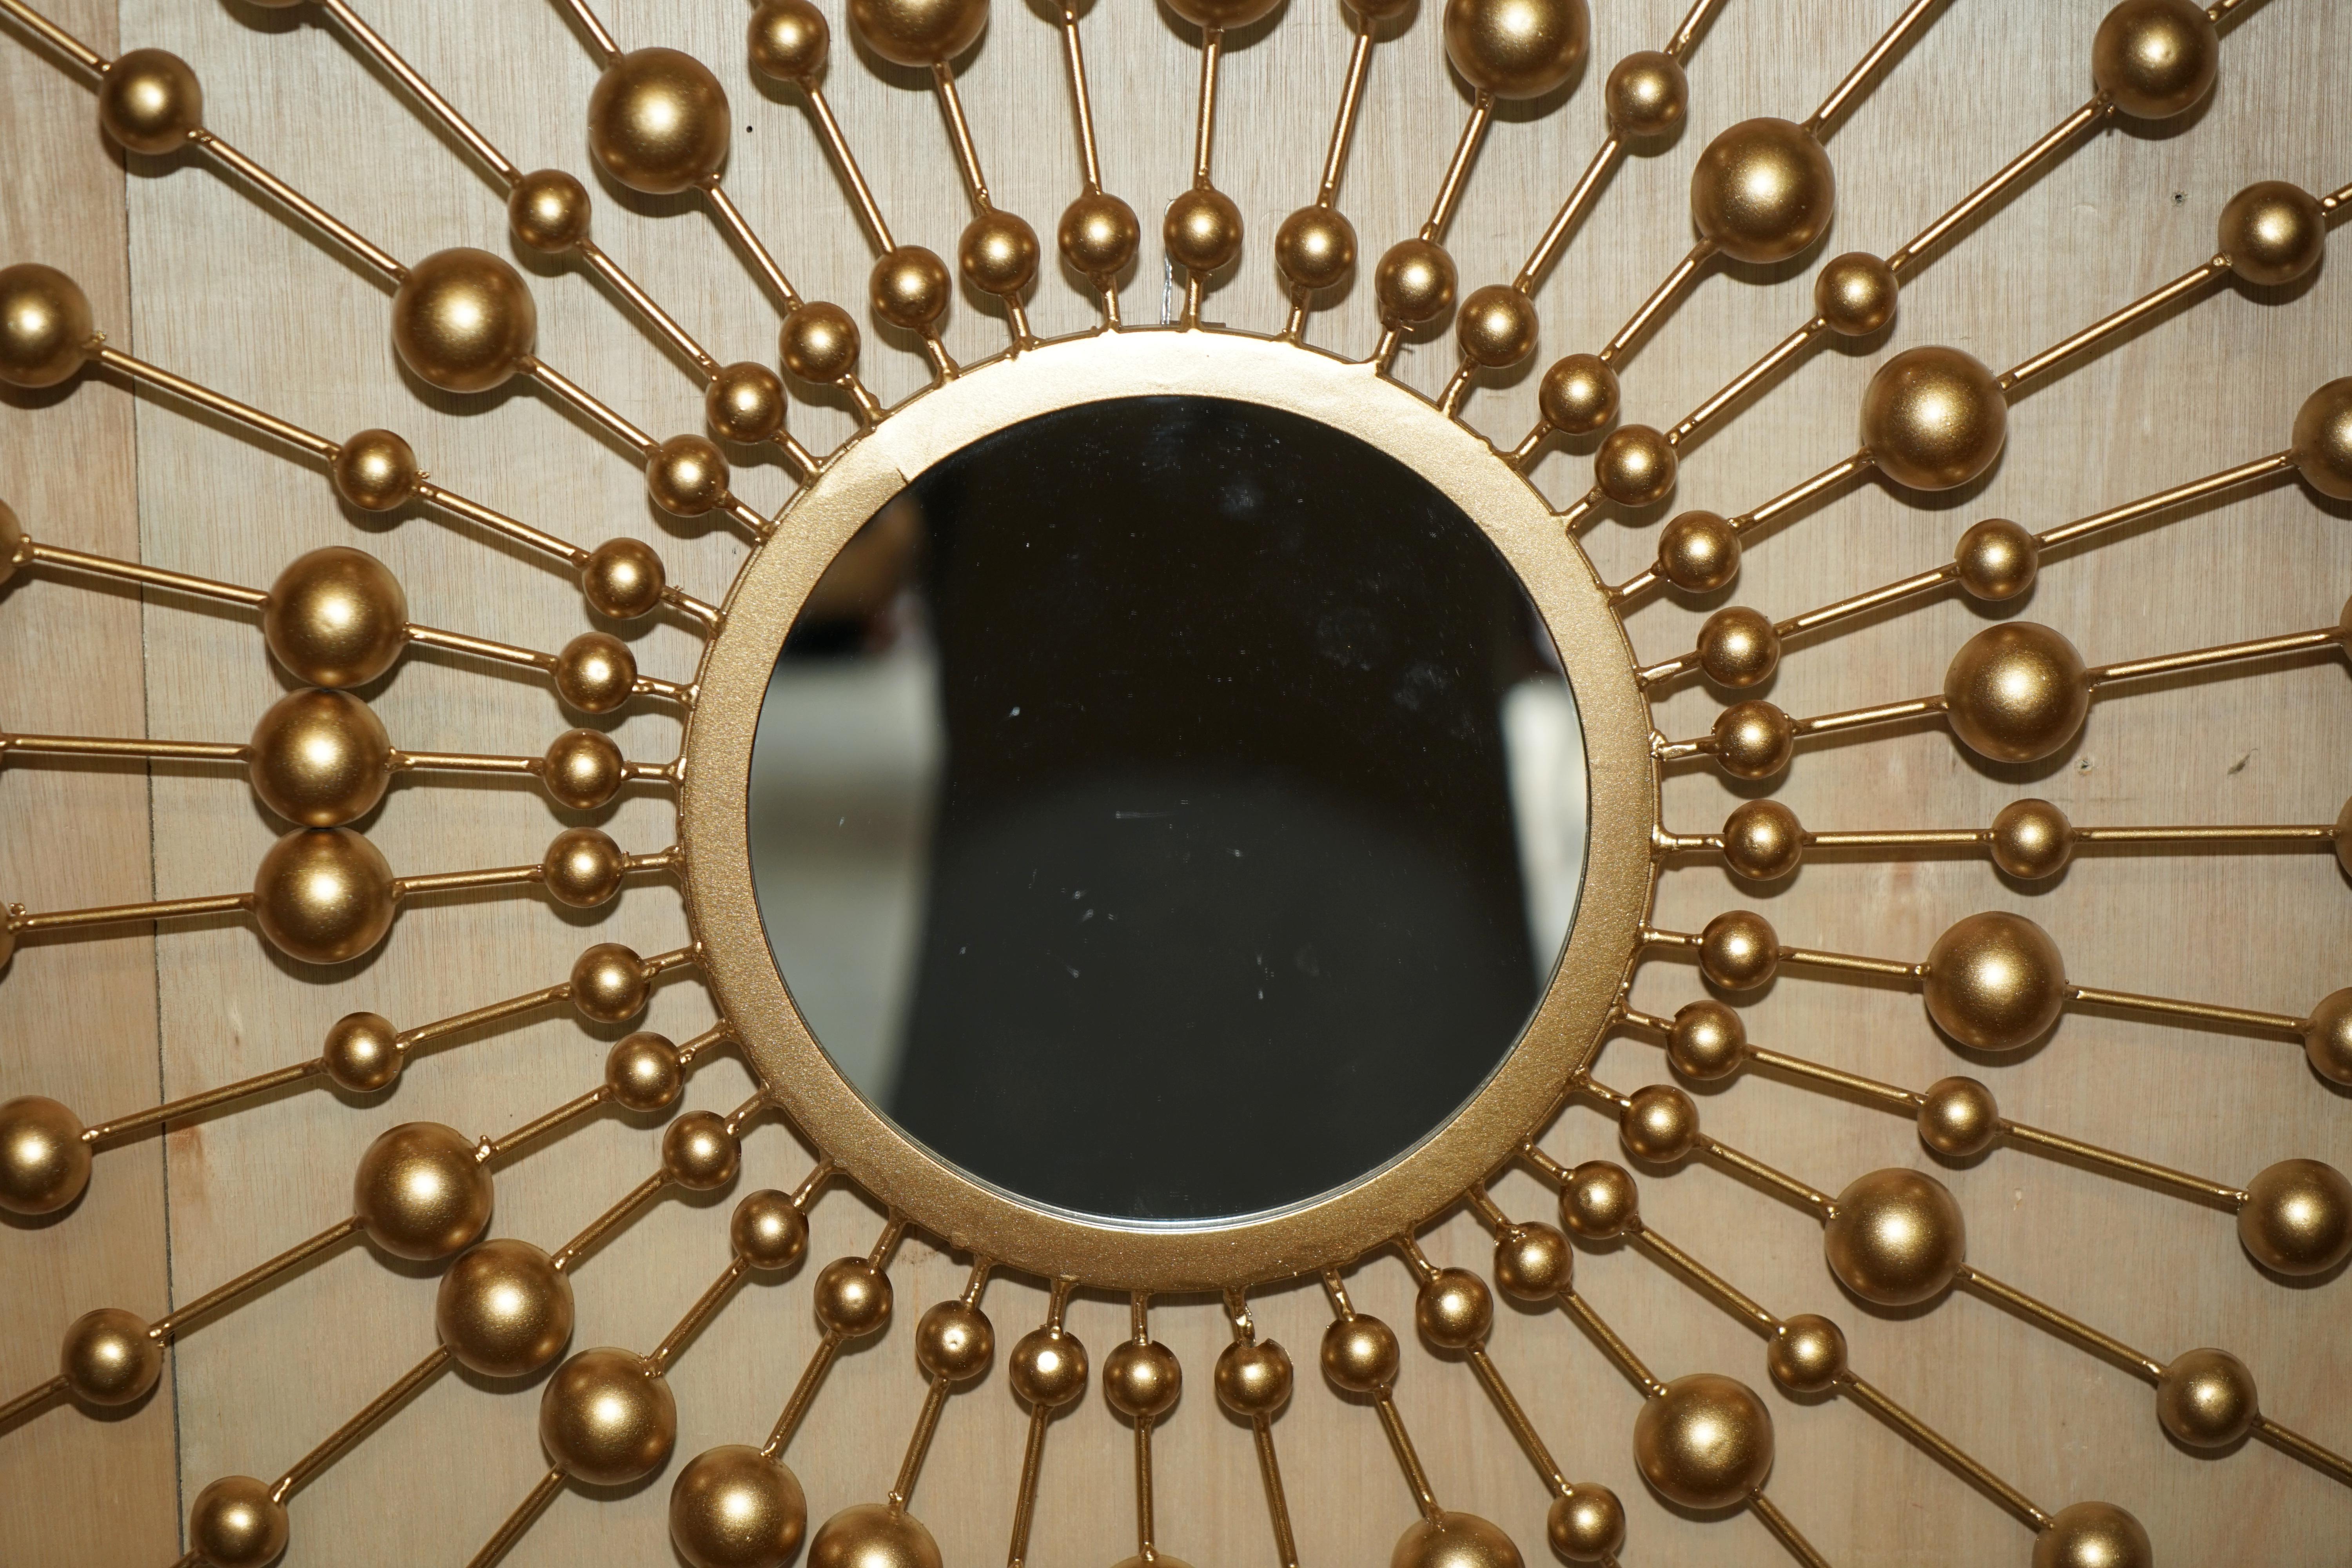 Royal House Antiques

Royal House Antiques freut sich, diesen großen dekorativen Spiegel im Sonnenstil zum Verkauf anbieten zu können, der einen kleinen zentralen Spiegel hat, der von 36 kleineren Spiegeln umgeben ist.

Bitte beachten Sie die